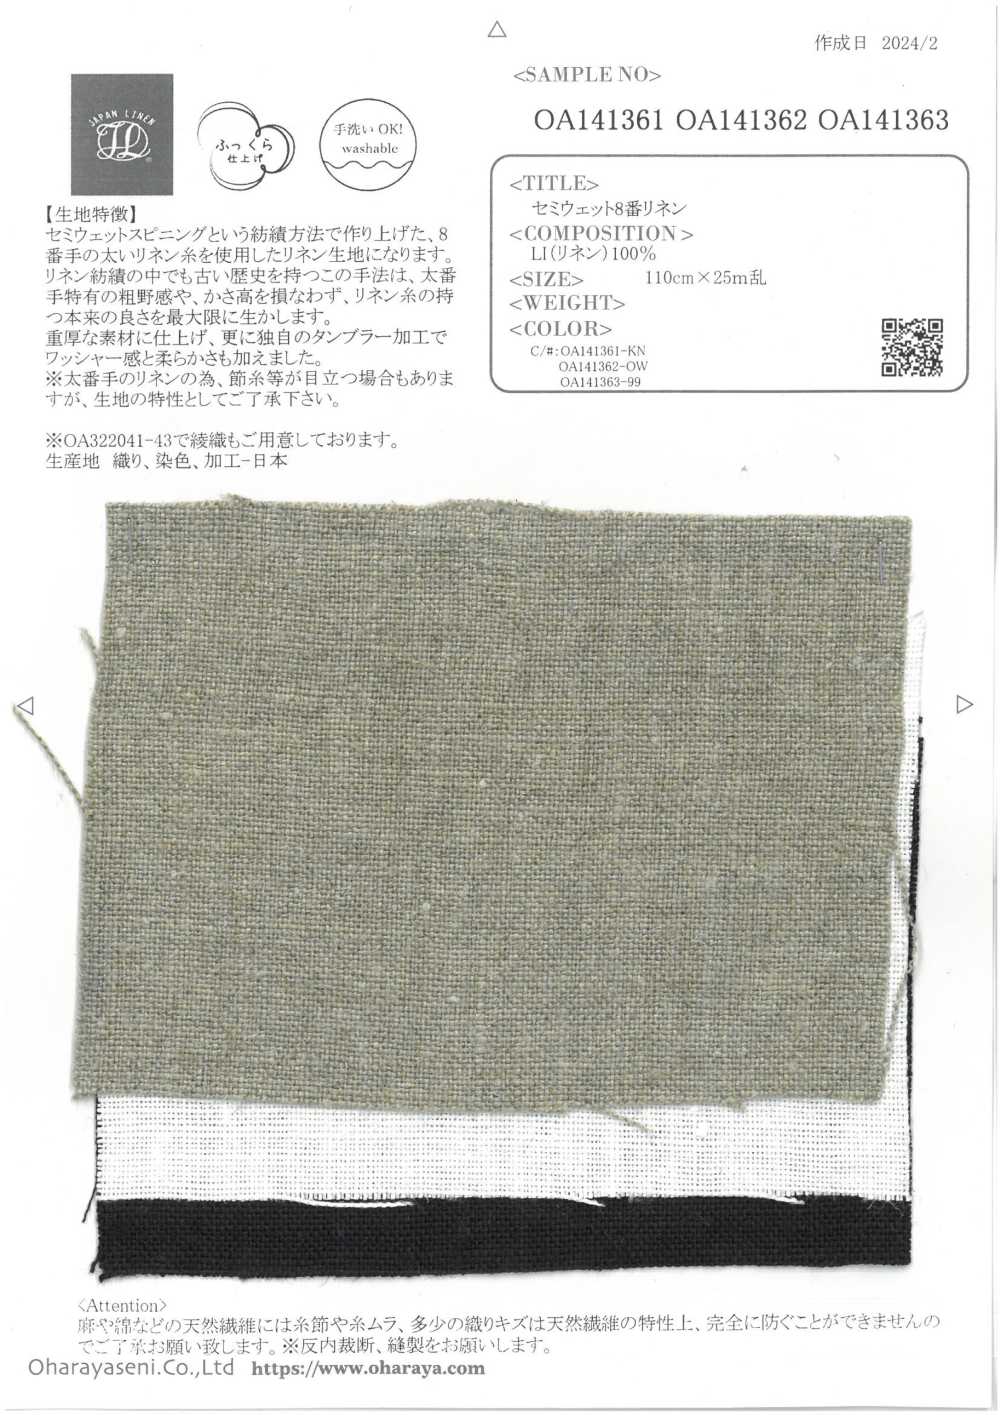 OA141361 Linho Semi-úmido Nº 8[Têxtil / Tecido] Oharayaseni